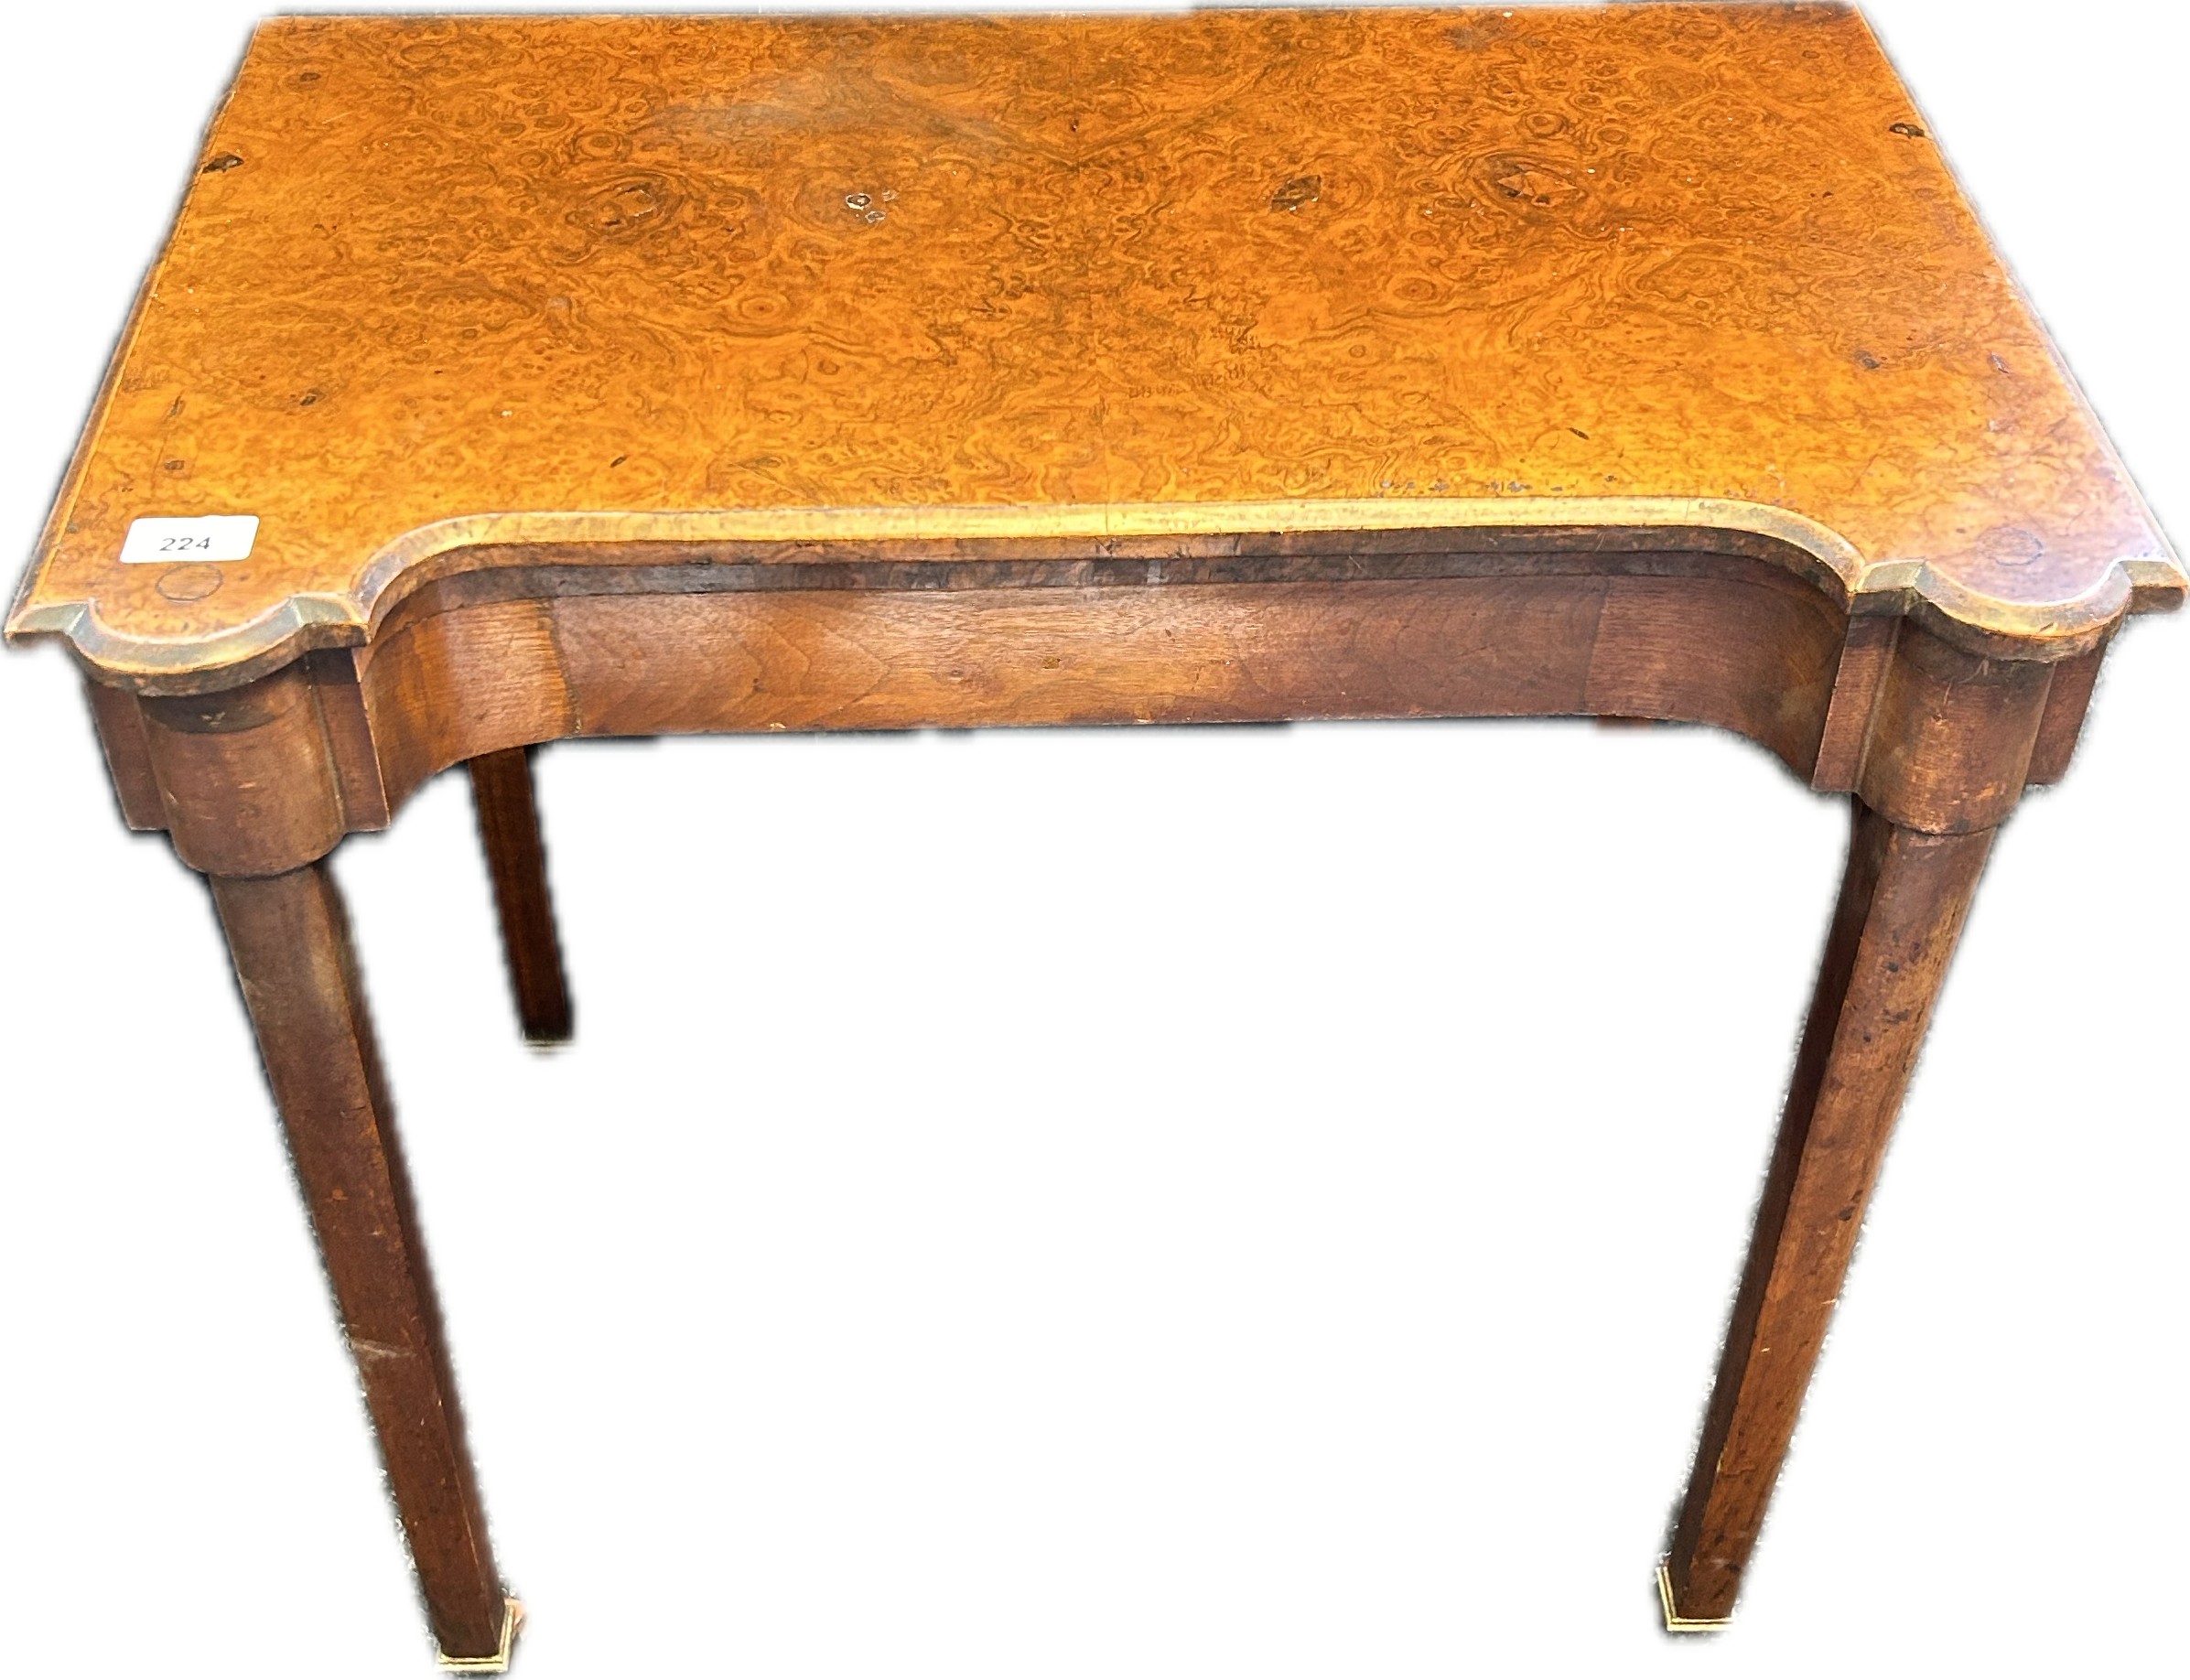 19th Century serpentine shaped walnut tea table, raised on square tapered legs